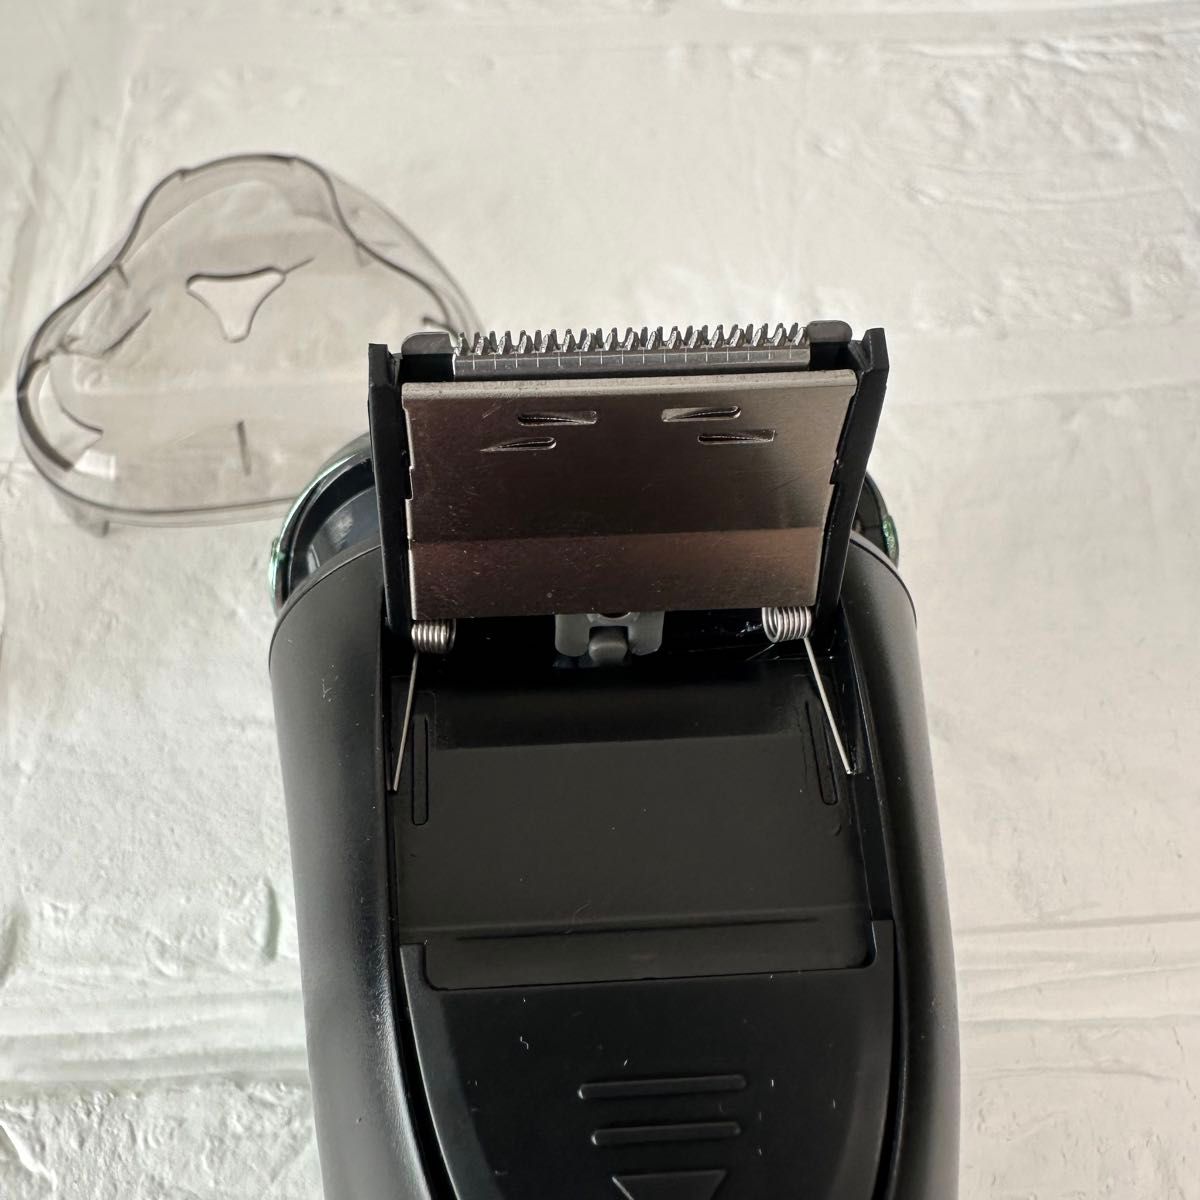 髭剃り 電気シェーバー USB急速充電 回転式 電動シェーバー 深剃り 電動 低騒音 シェーバー 防水 水洗い可能